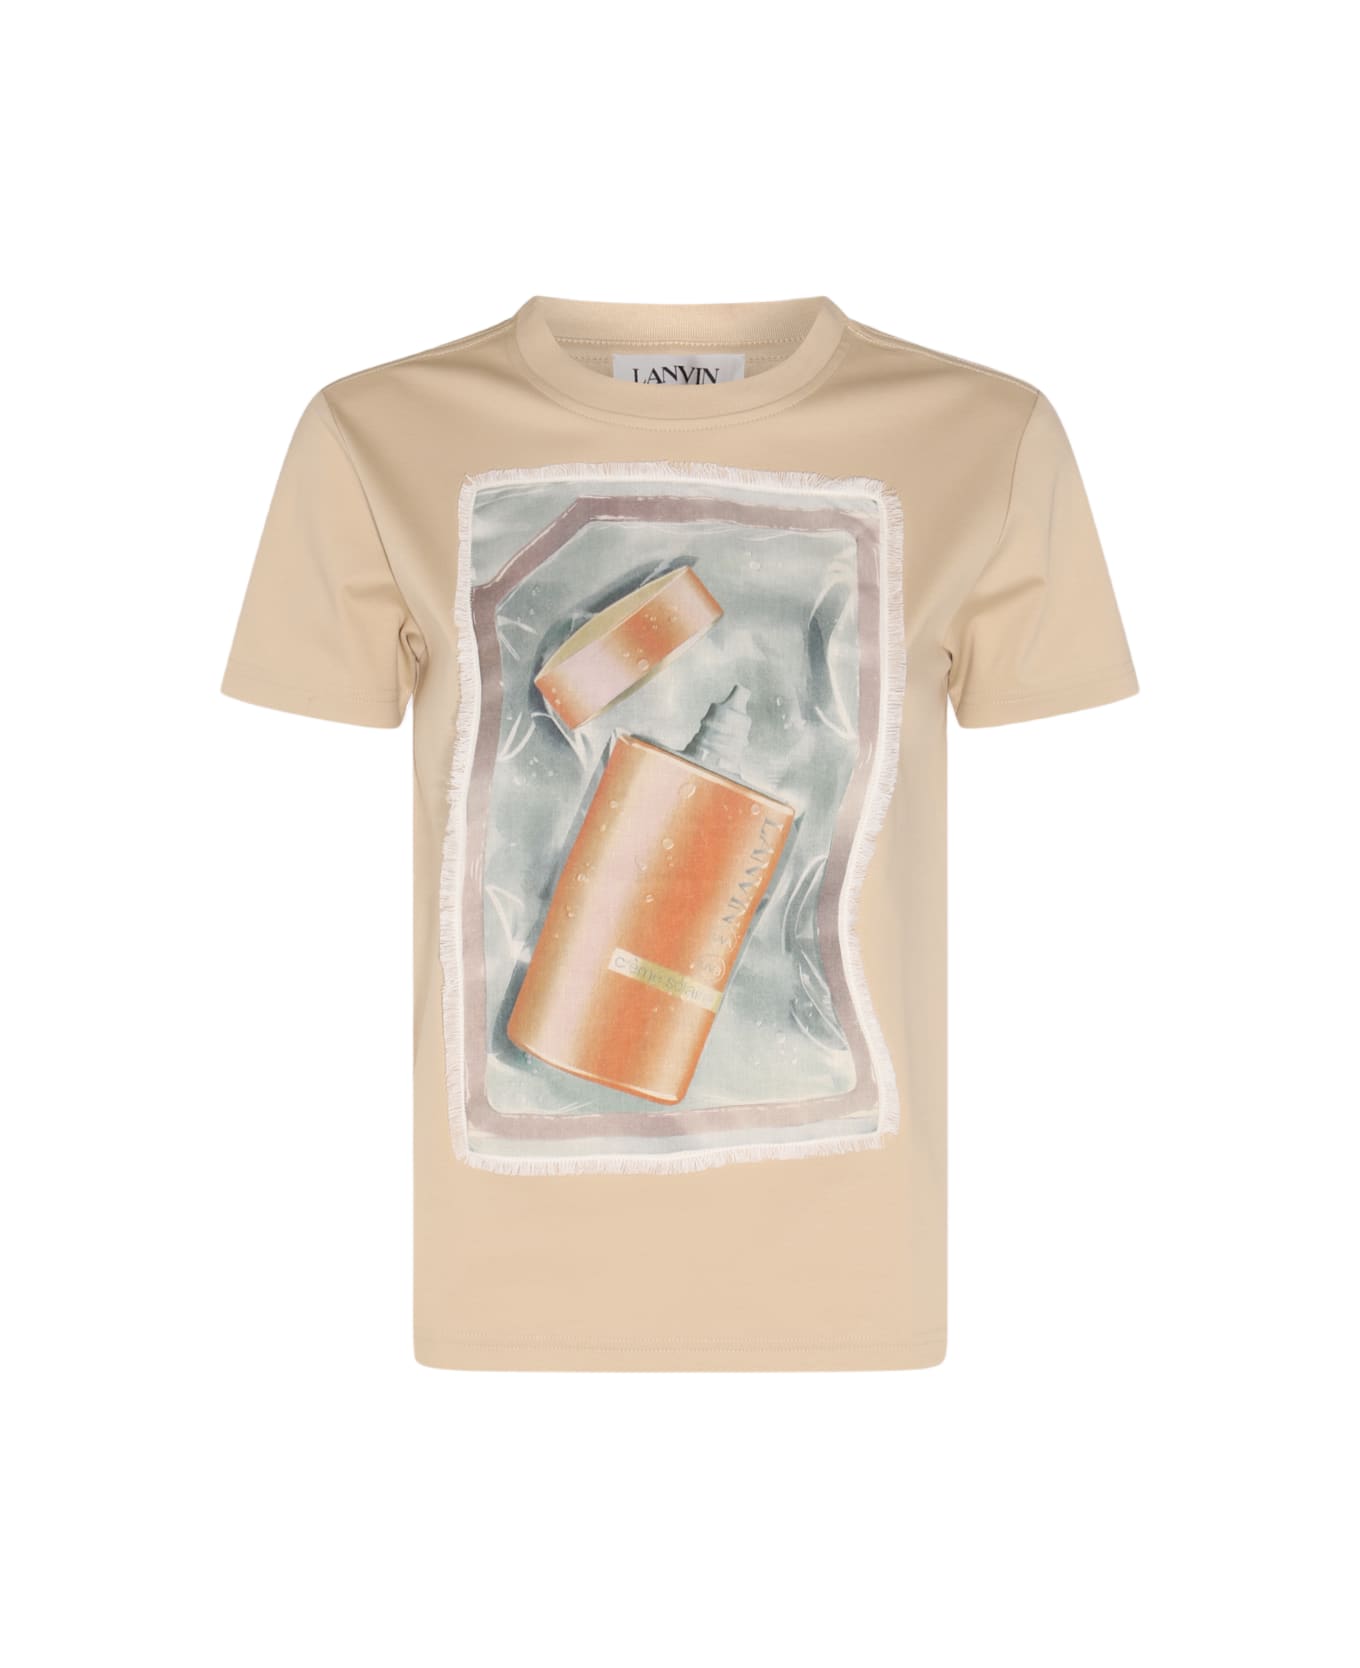 Lanvin Sand Cotton T-shirt - SAND Tシャツ